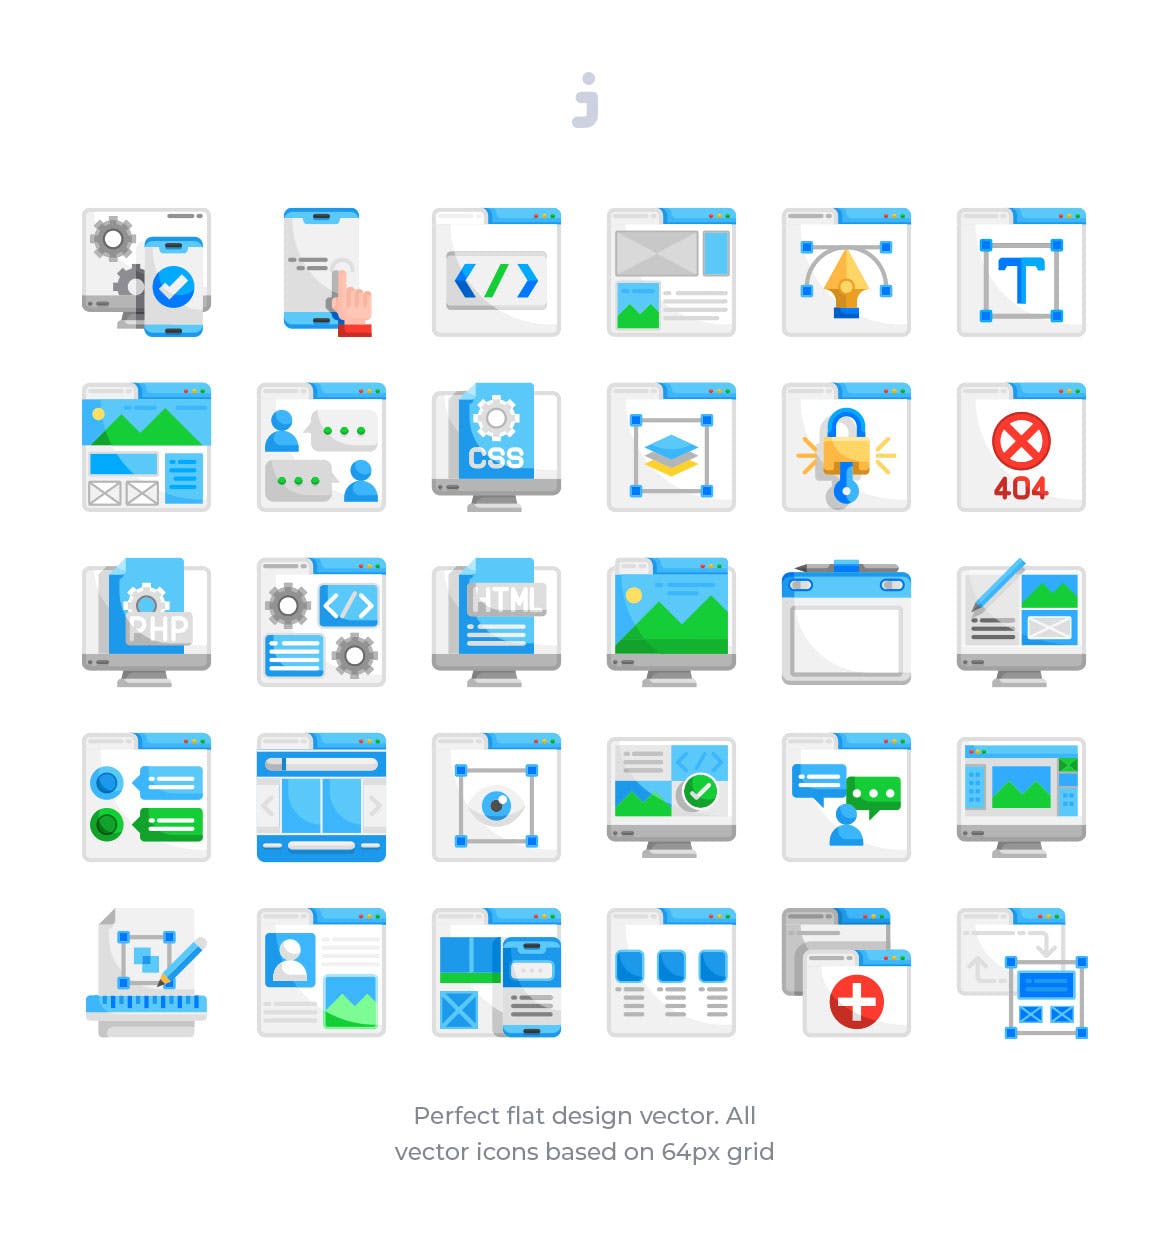 30枚扁平设计风格响应式网站设计素材库精选图标 30 Responsive & Web Design Icons – Flat插图(1)